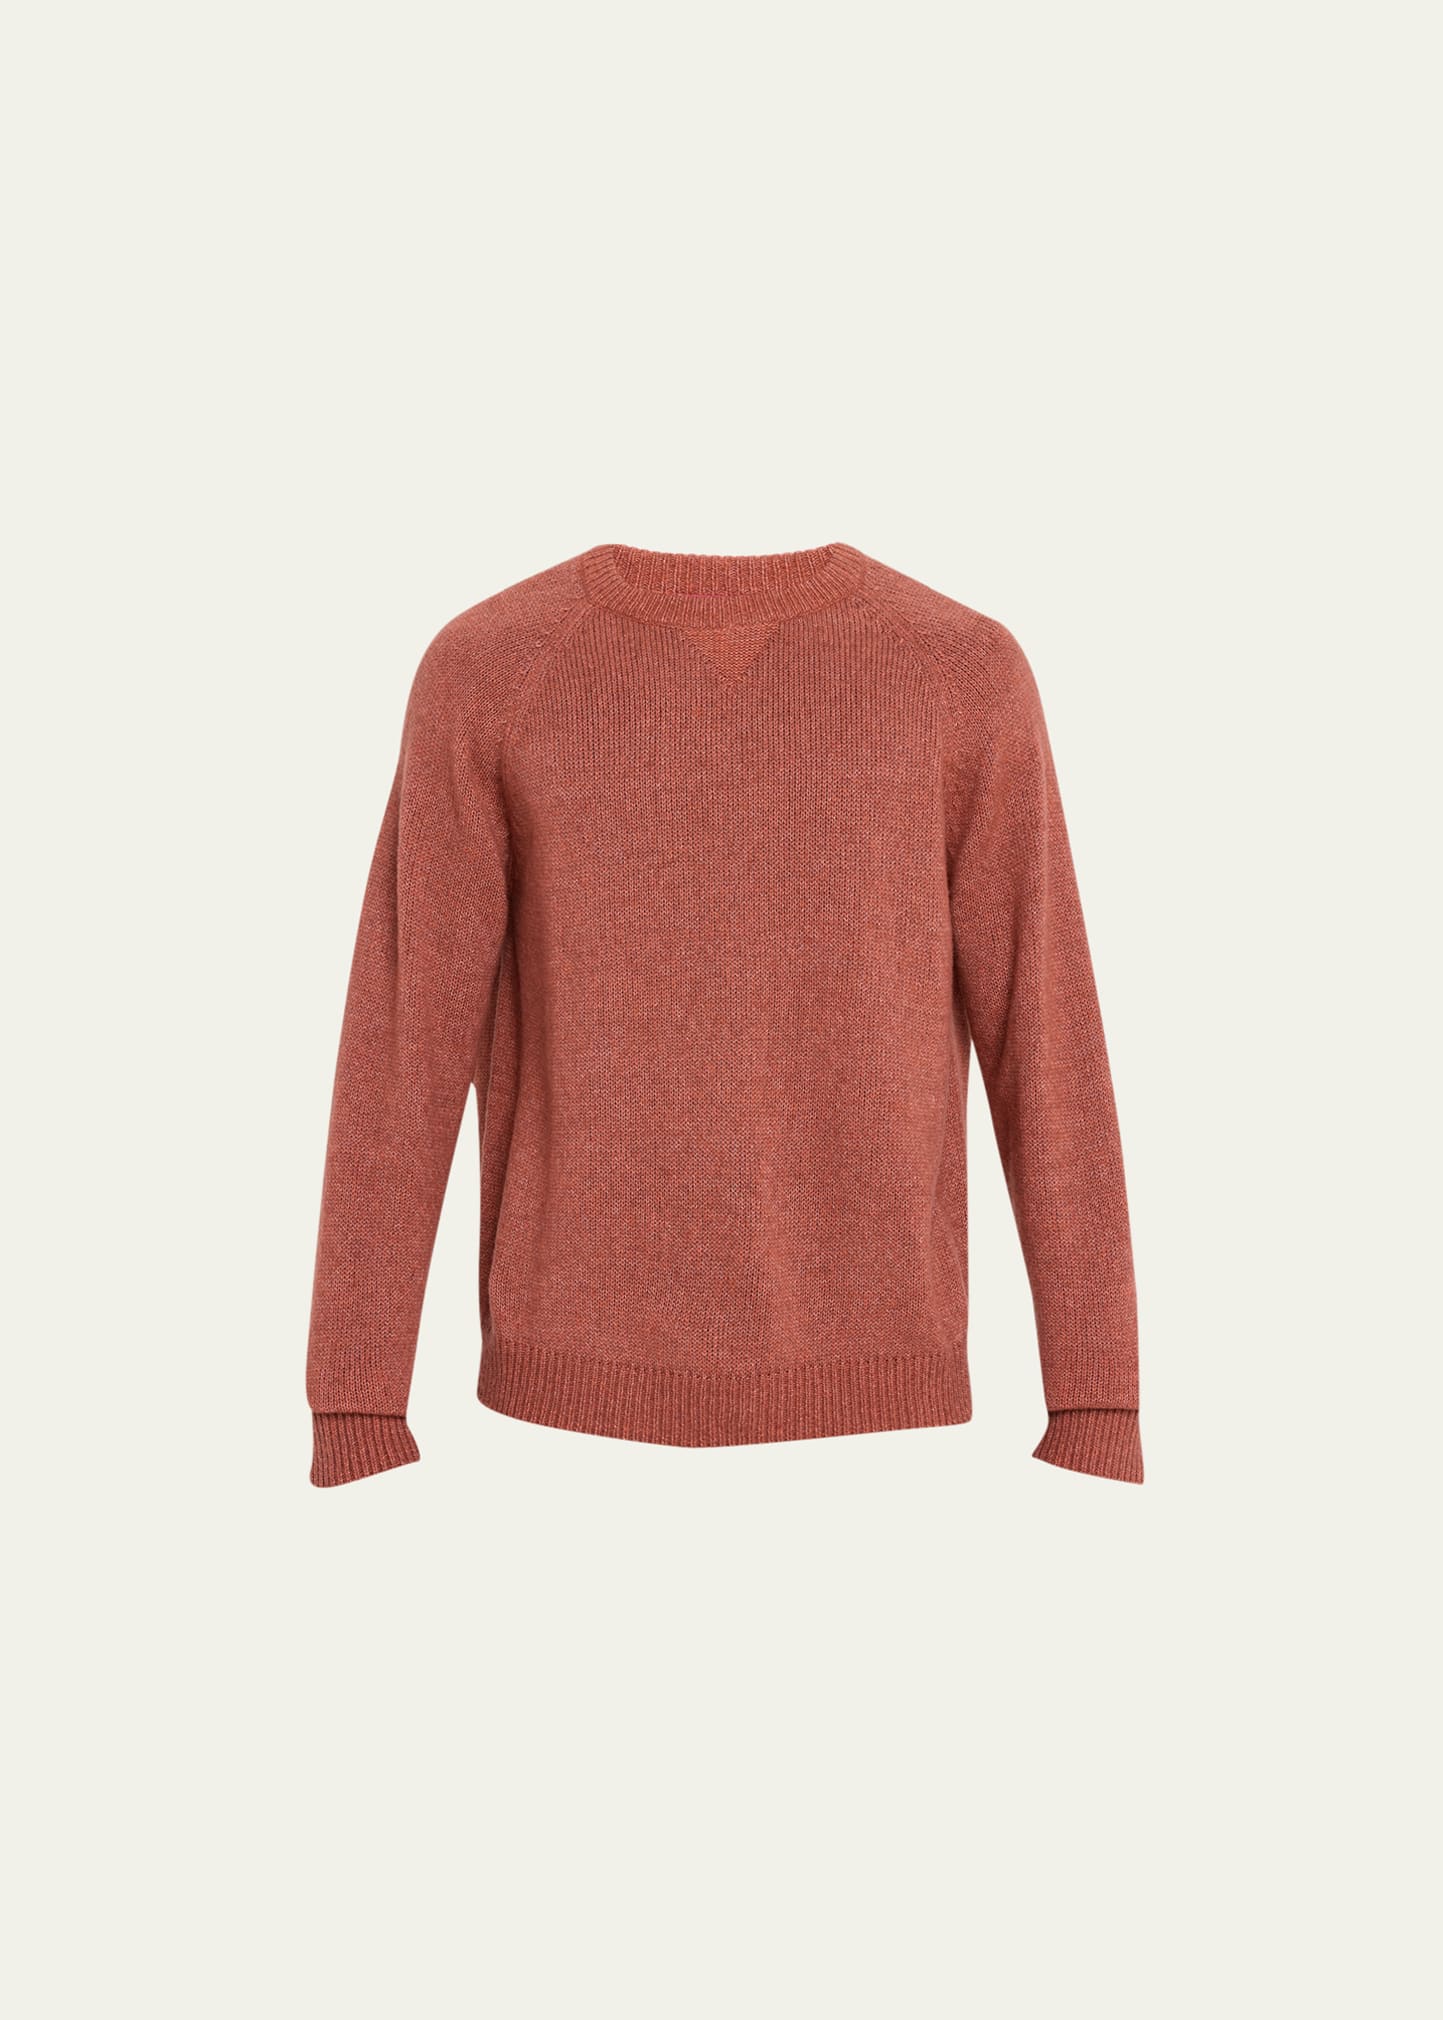 Men's Cashmere-Cotton Crewneck Sweater